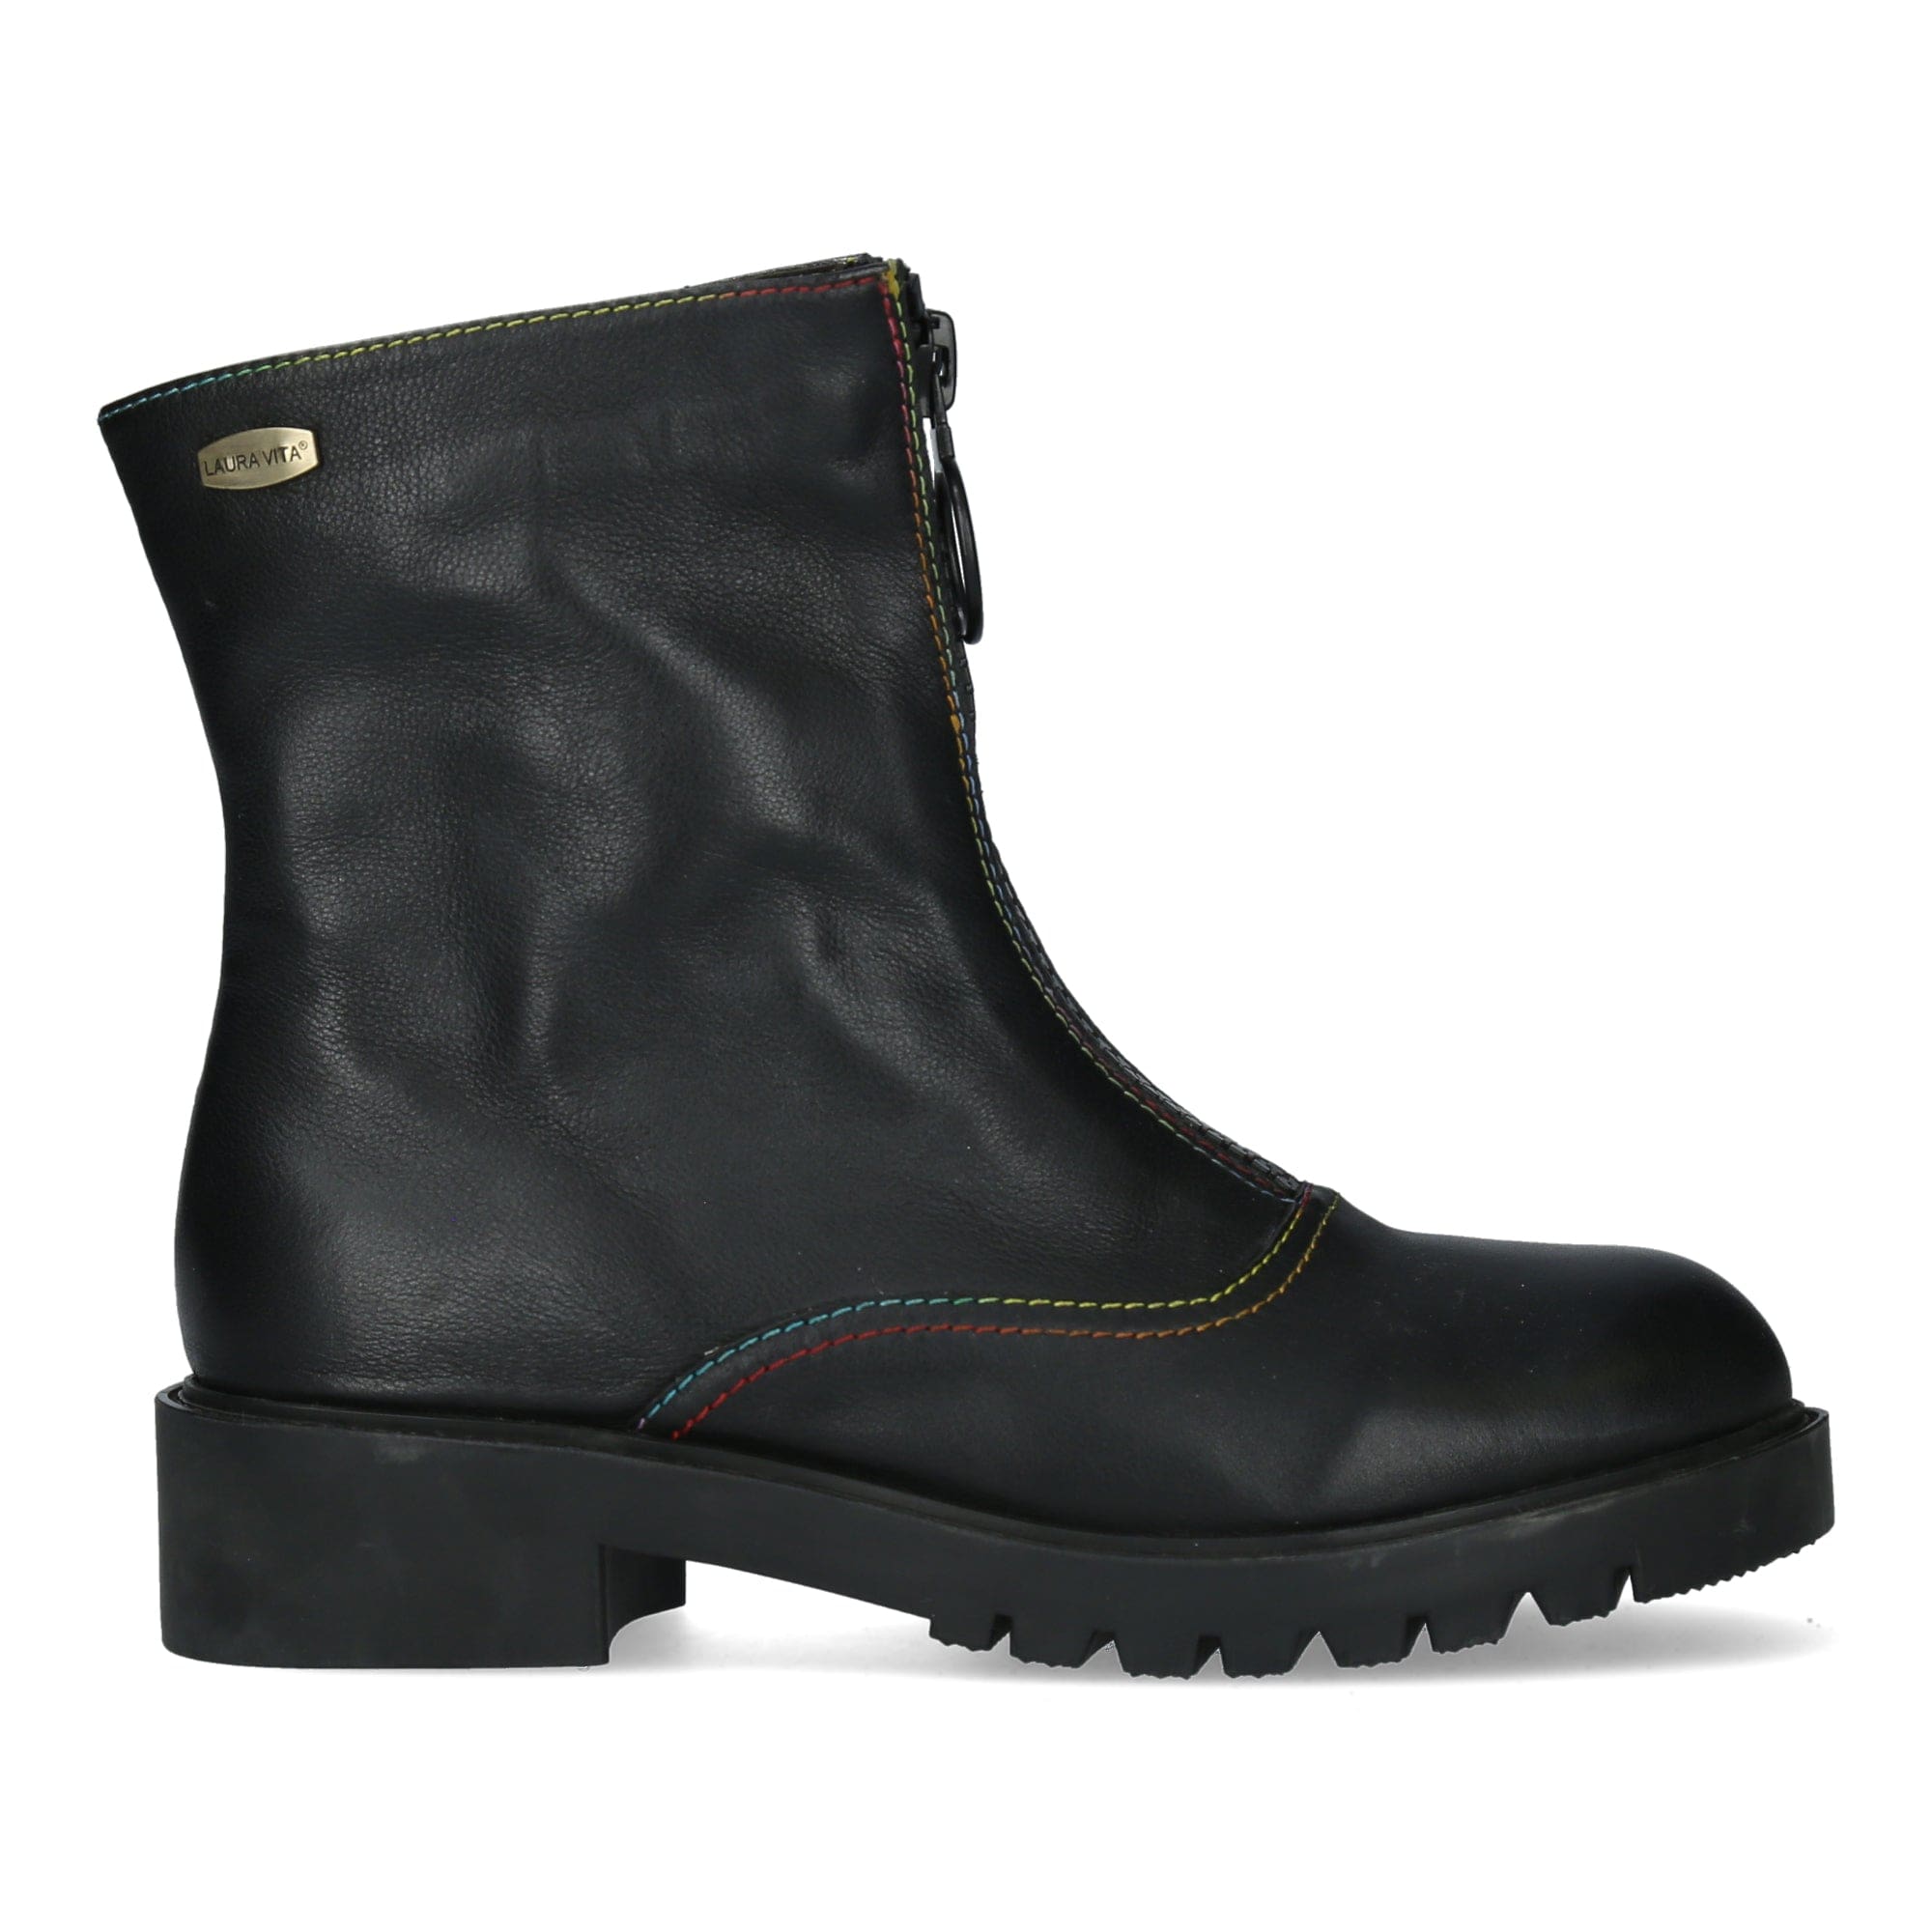 Chaussure IDCRISSAO 29 - 35 / Noir - Boots